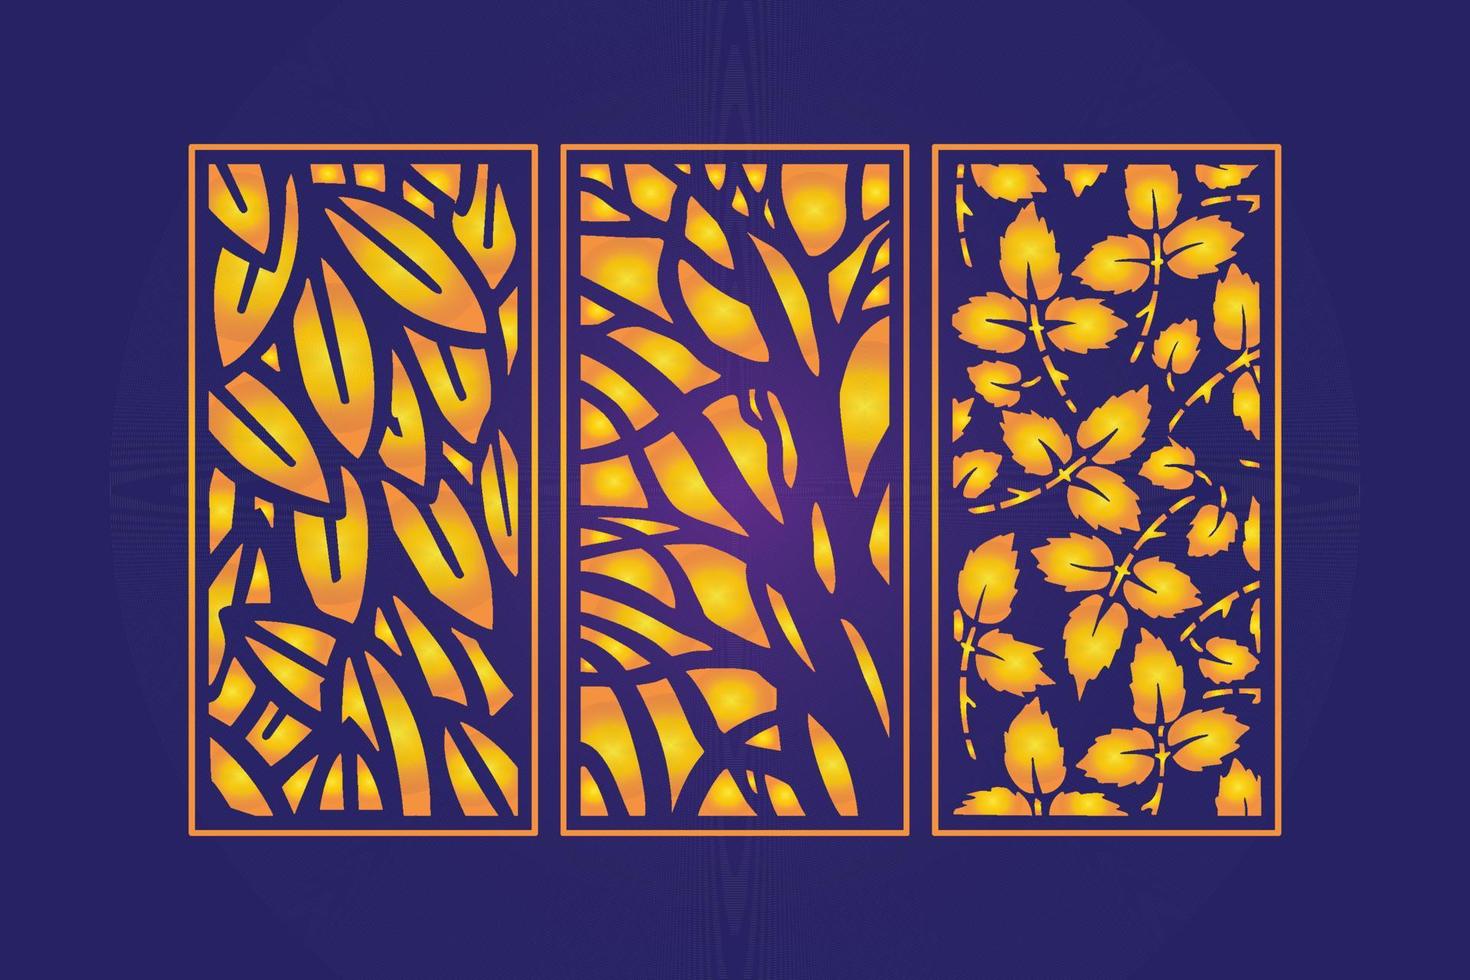 modelo de painéis de corte a laser abstrato floral cortado decorativo vetor